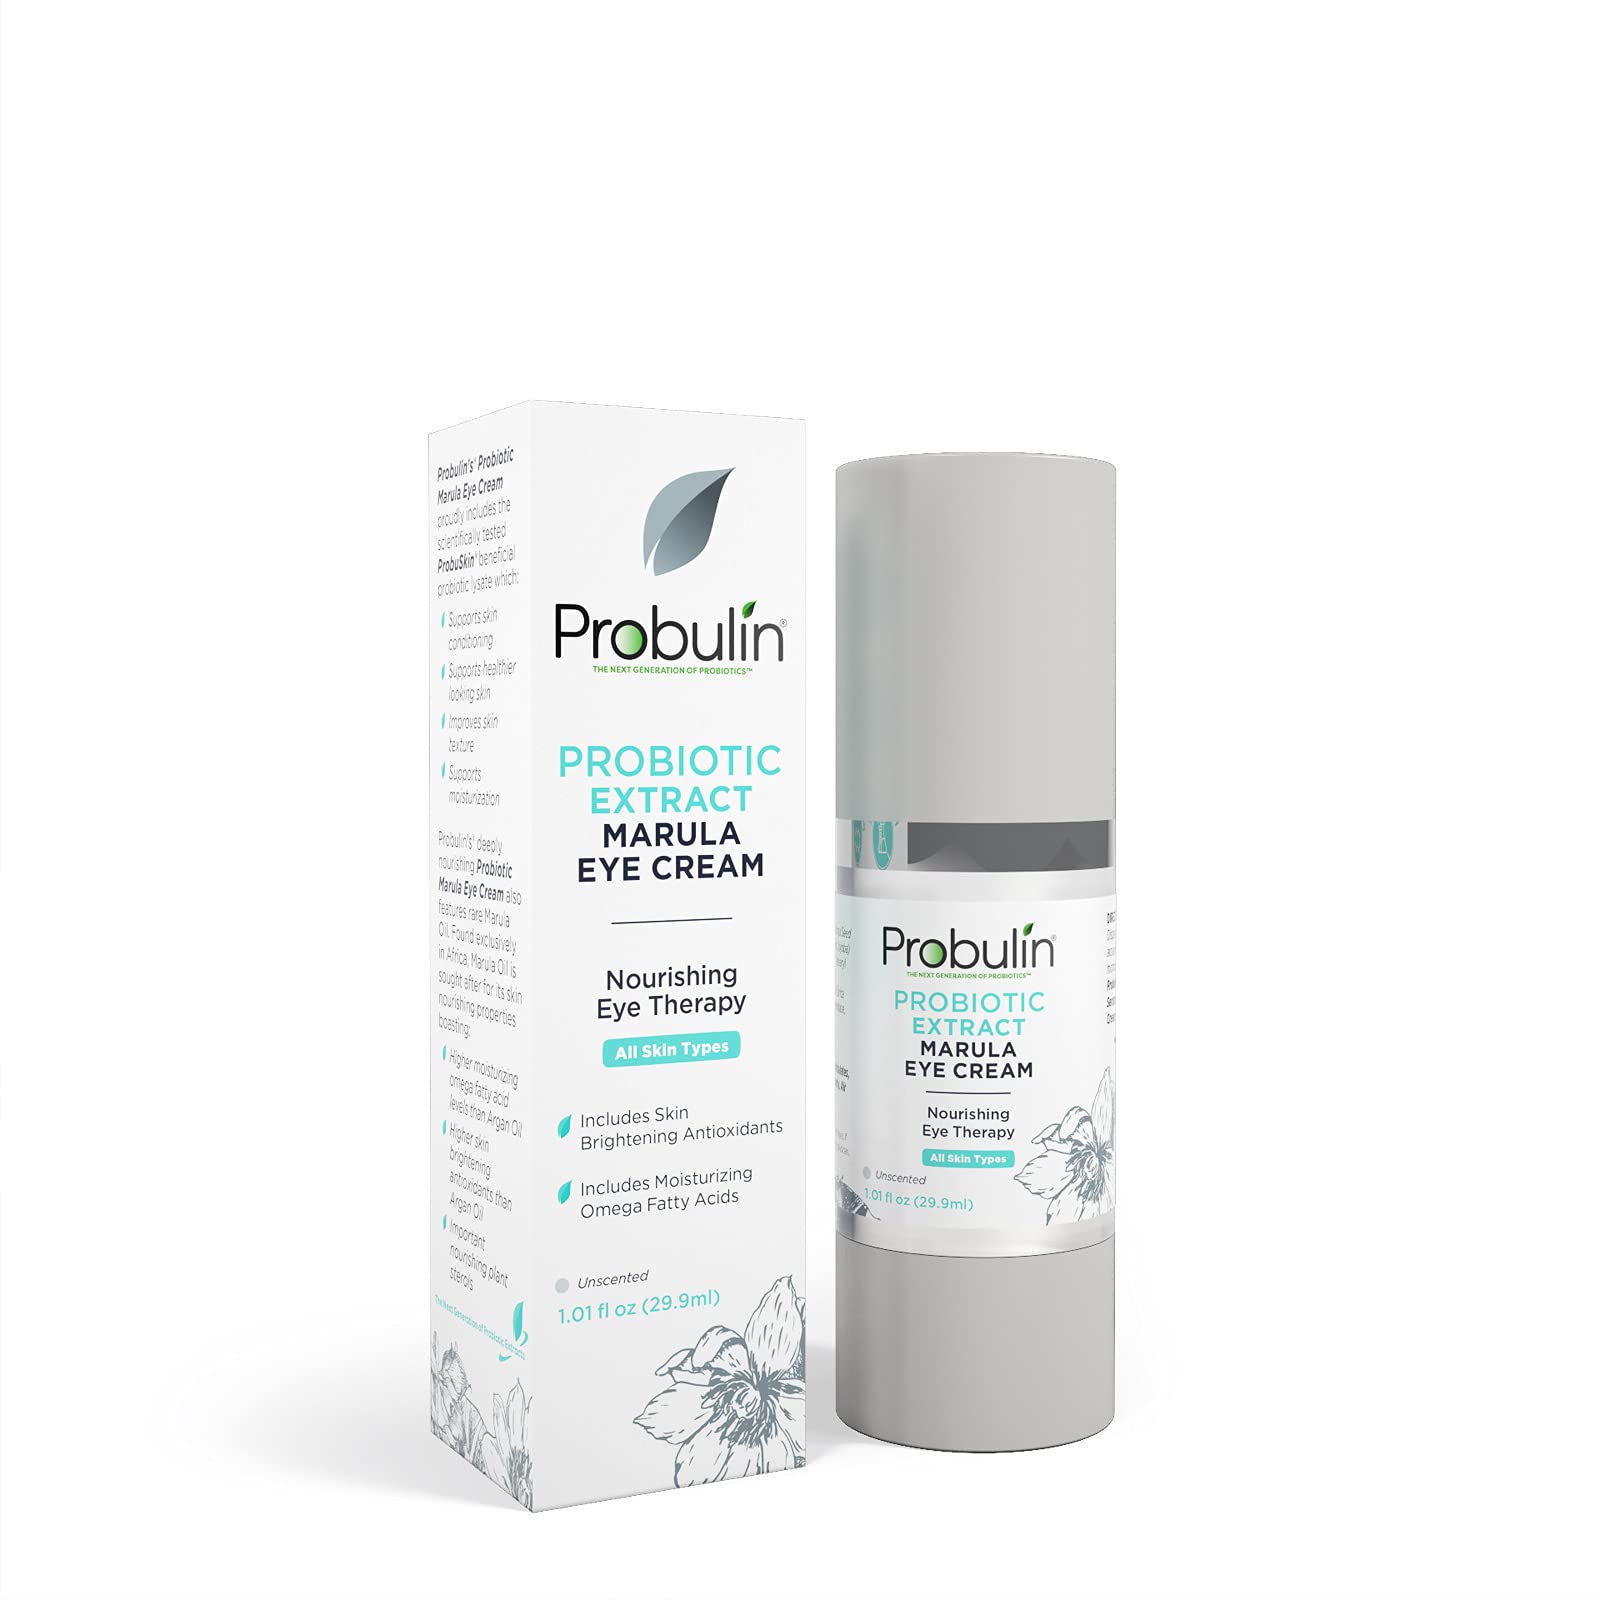 Probulin Probiotic Extract Marula Eye Cream, 1.01 Ounce